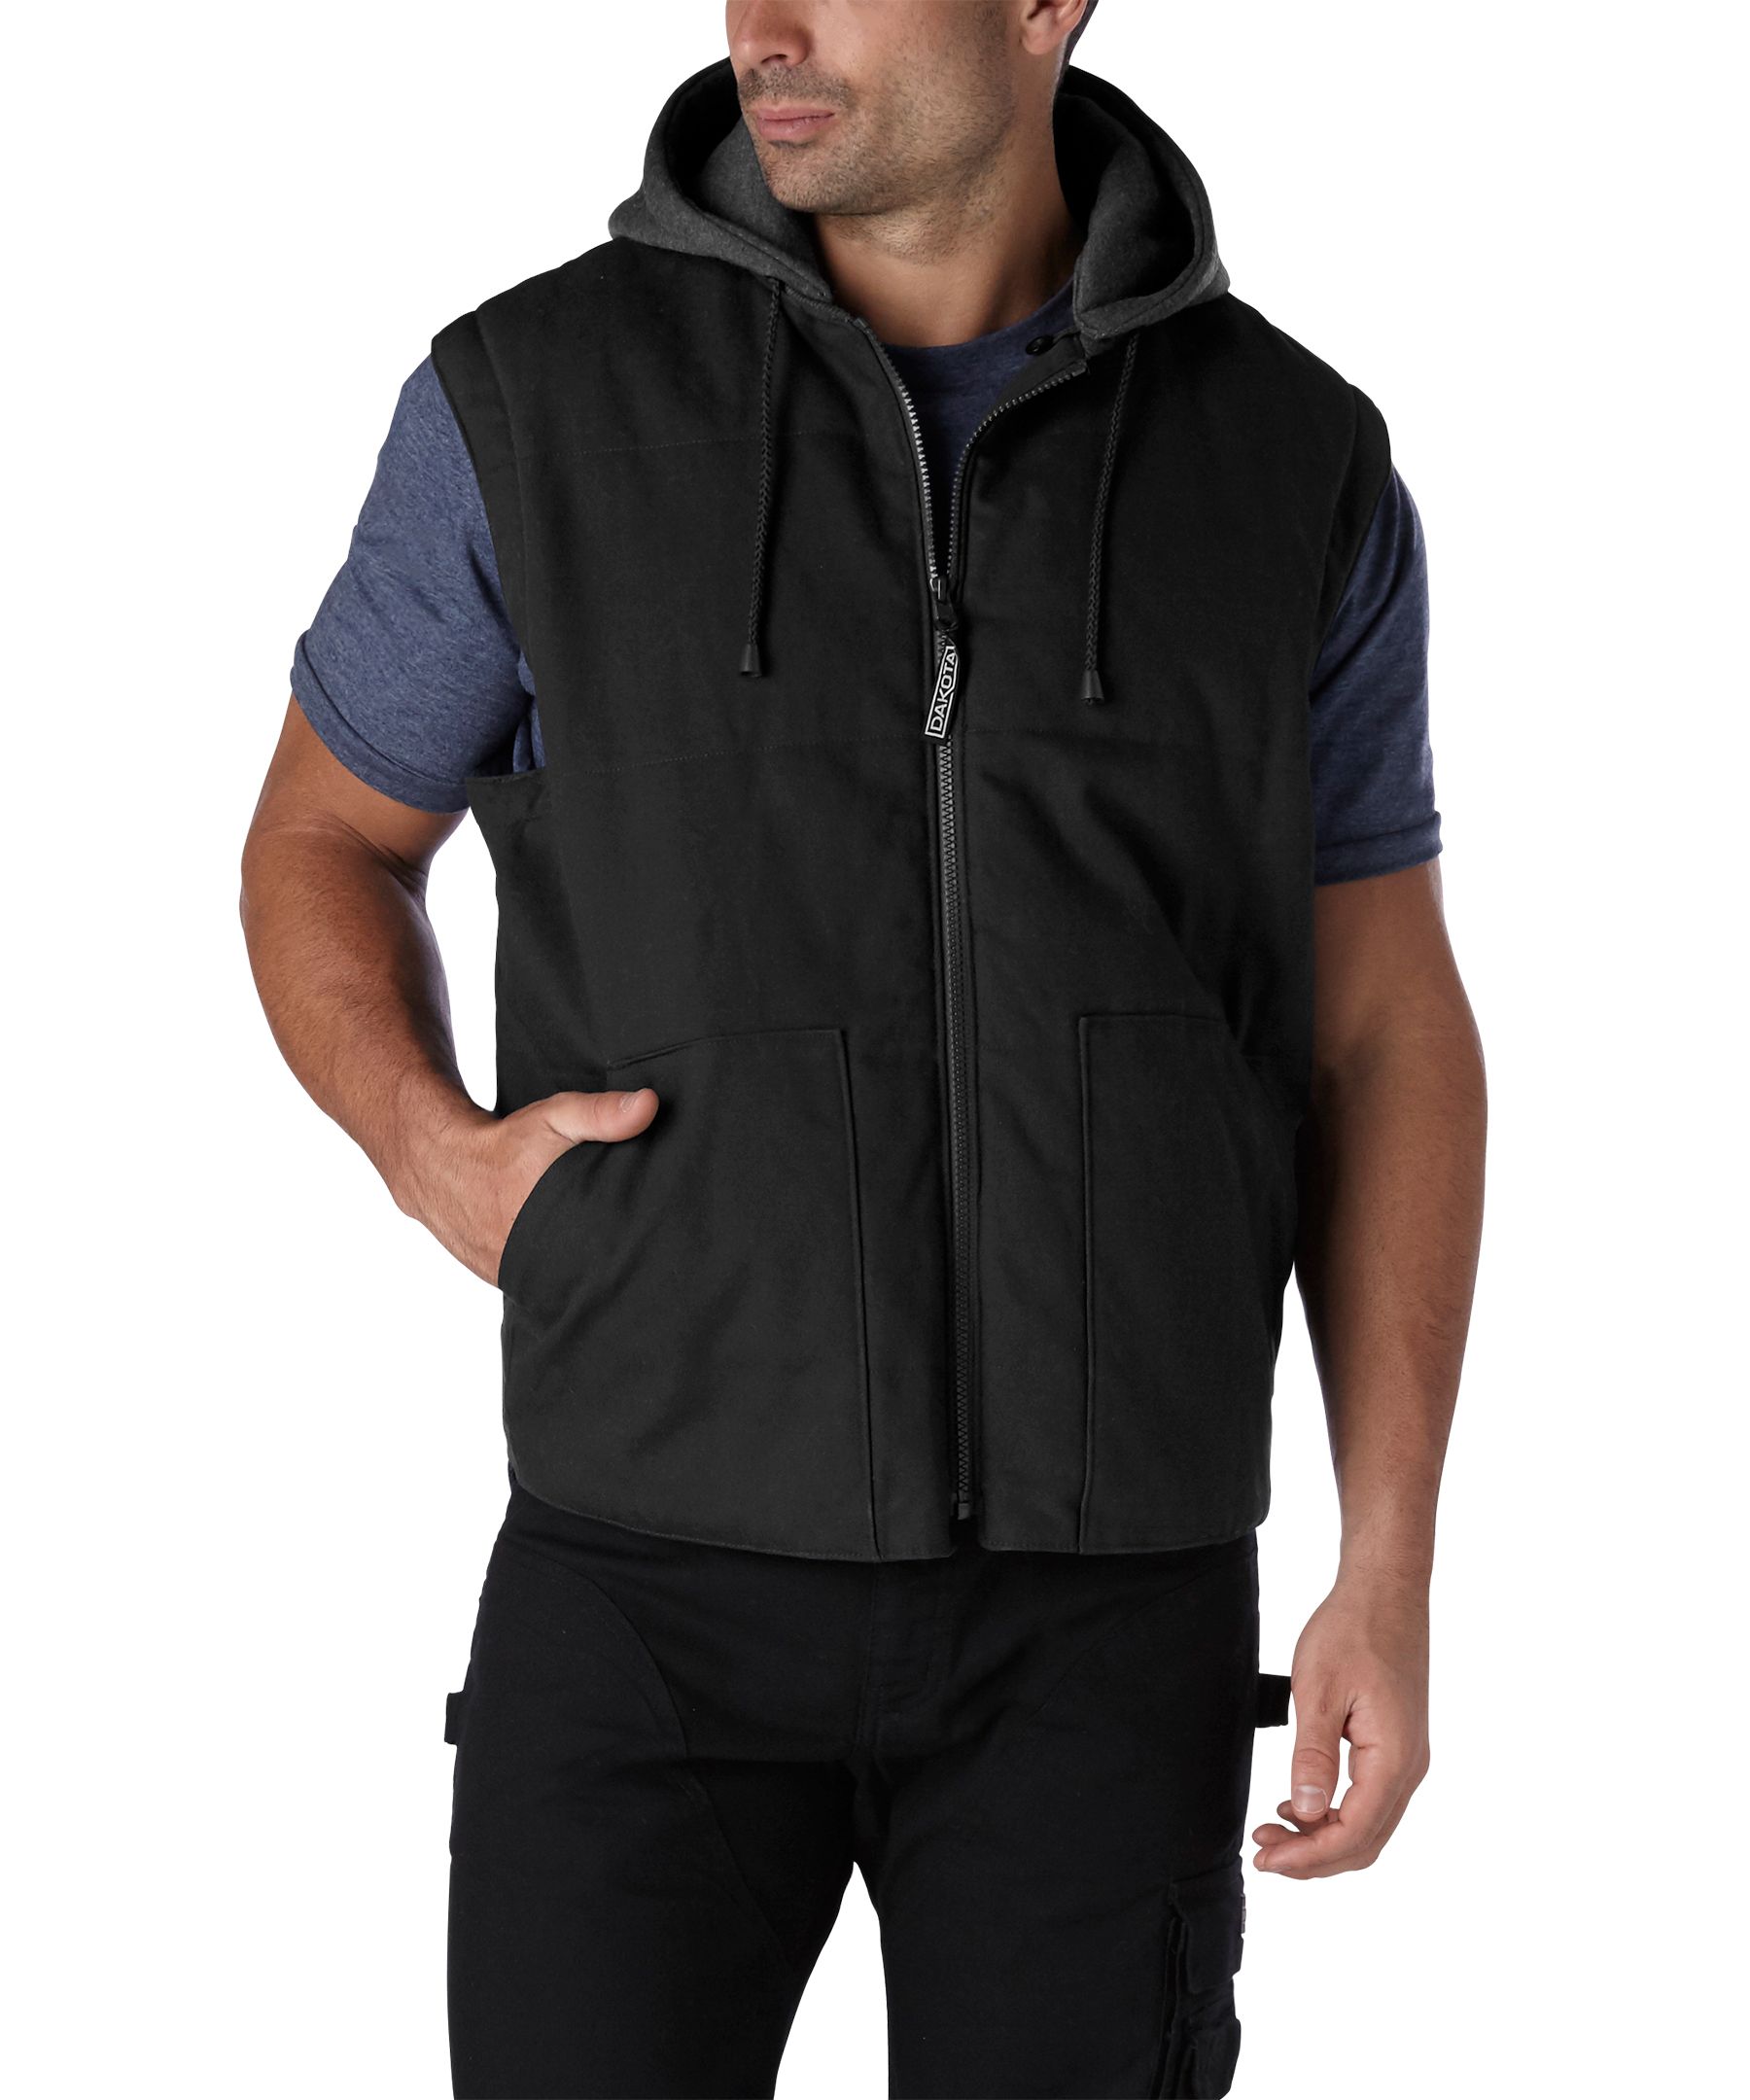 Dakota WorkPro Series Men's Cotton Duck Quilted Jacket Vest with Zip Off  Sleeves